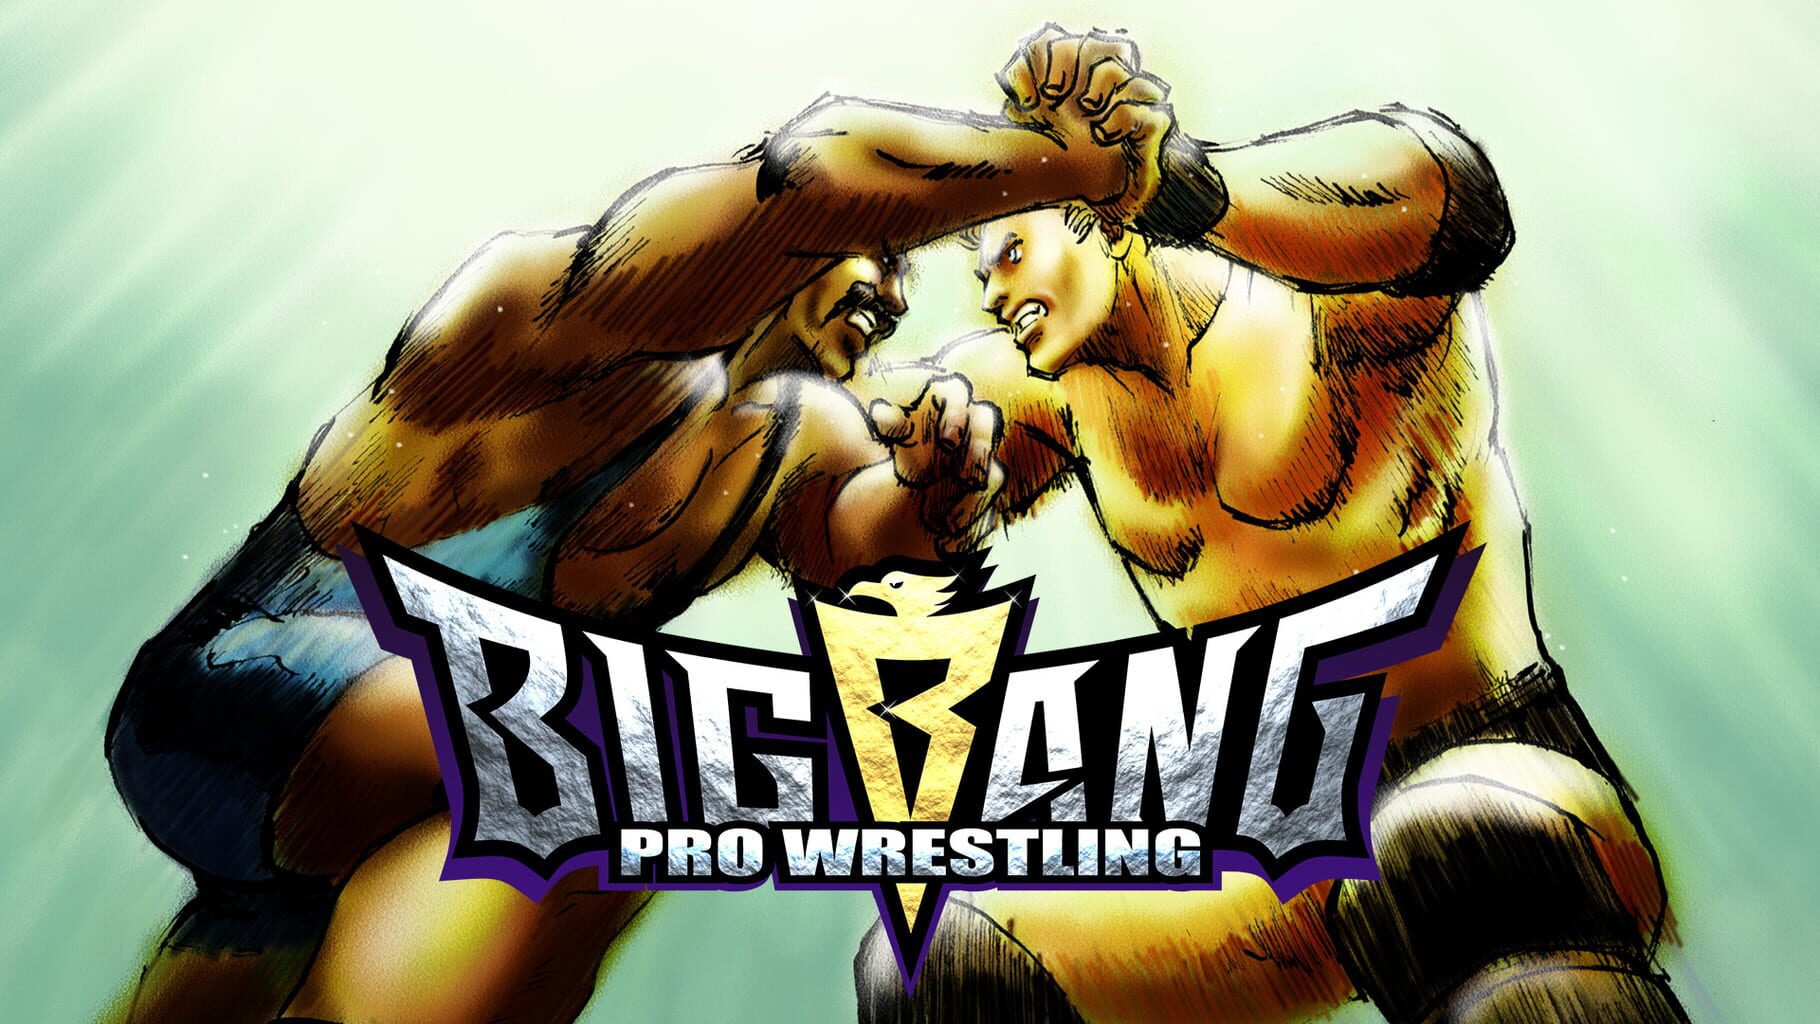 Big Bang Pro Wrestling artwork